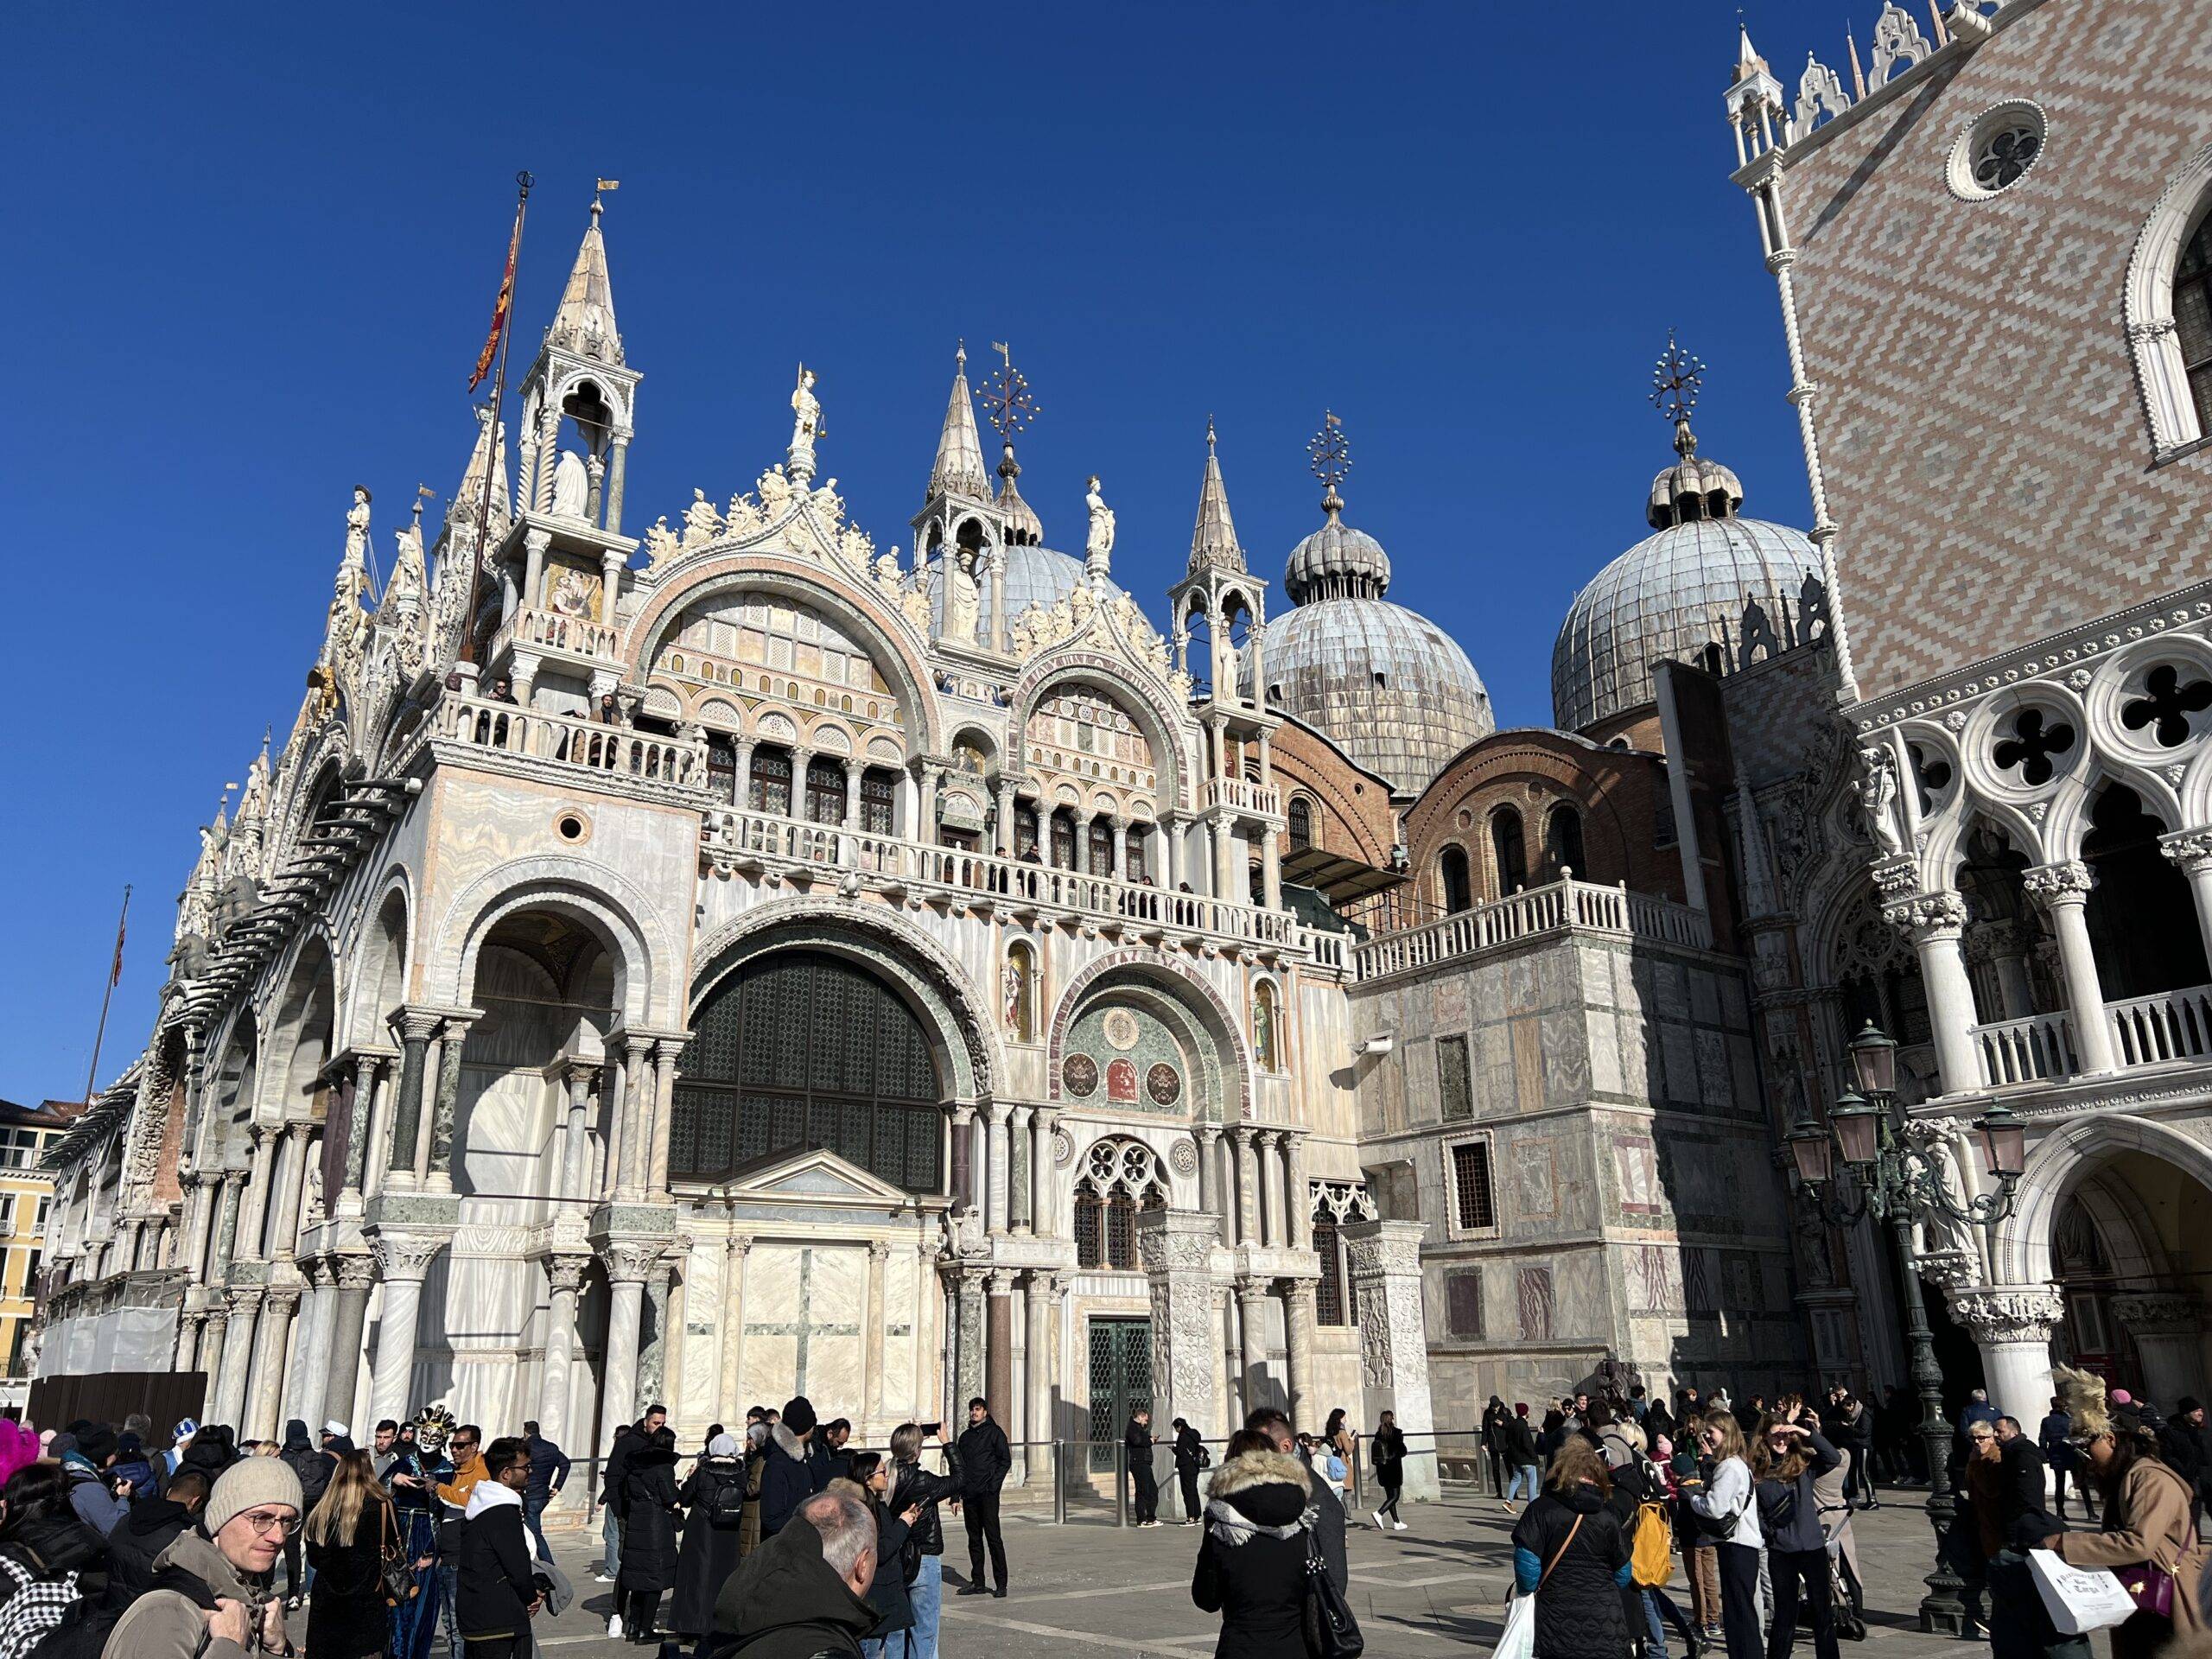 Saint-Marks-Basilica | Venice